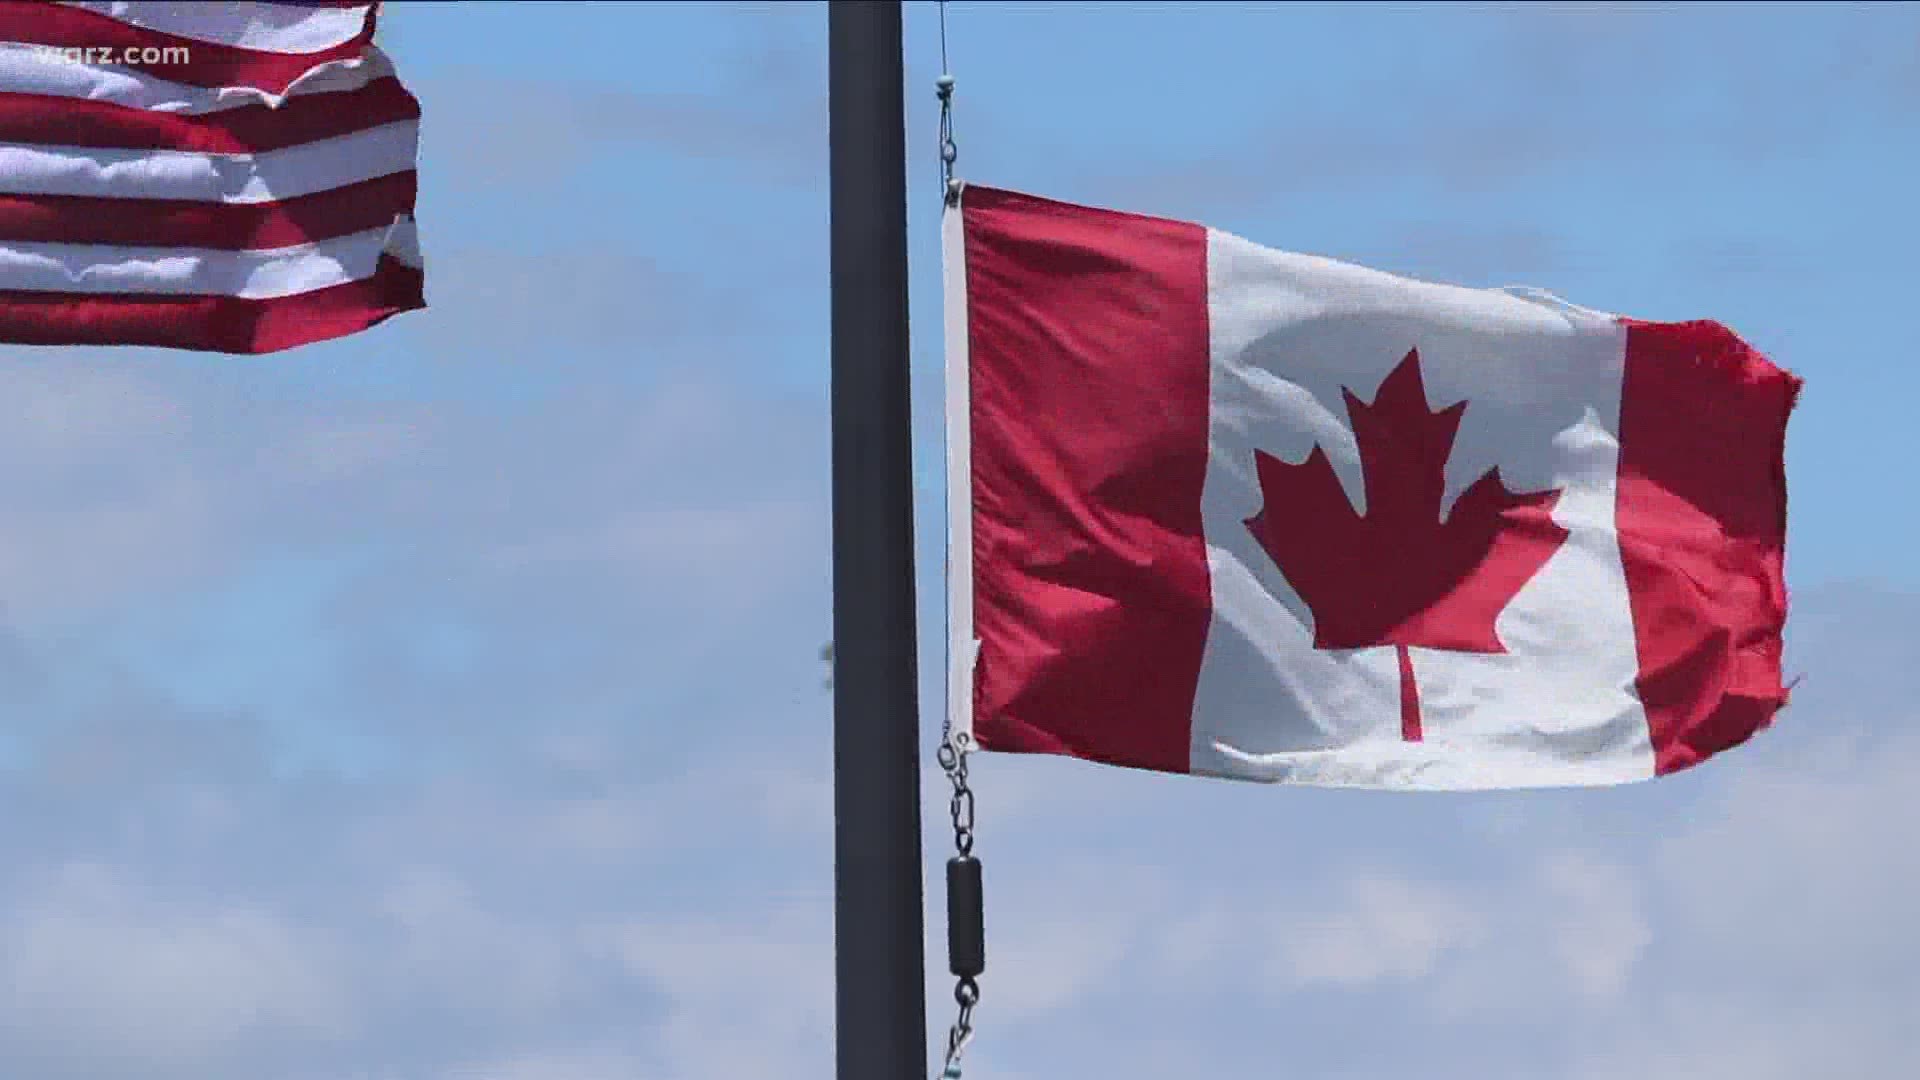 Canadian ambassador tomorrow to discuss his border proposals.